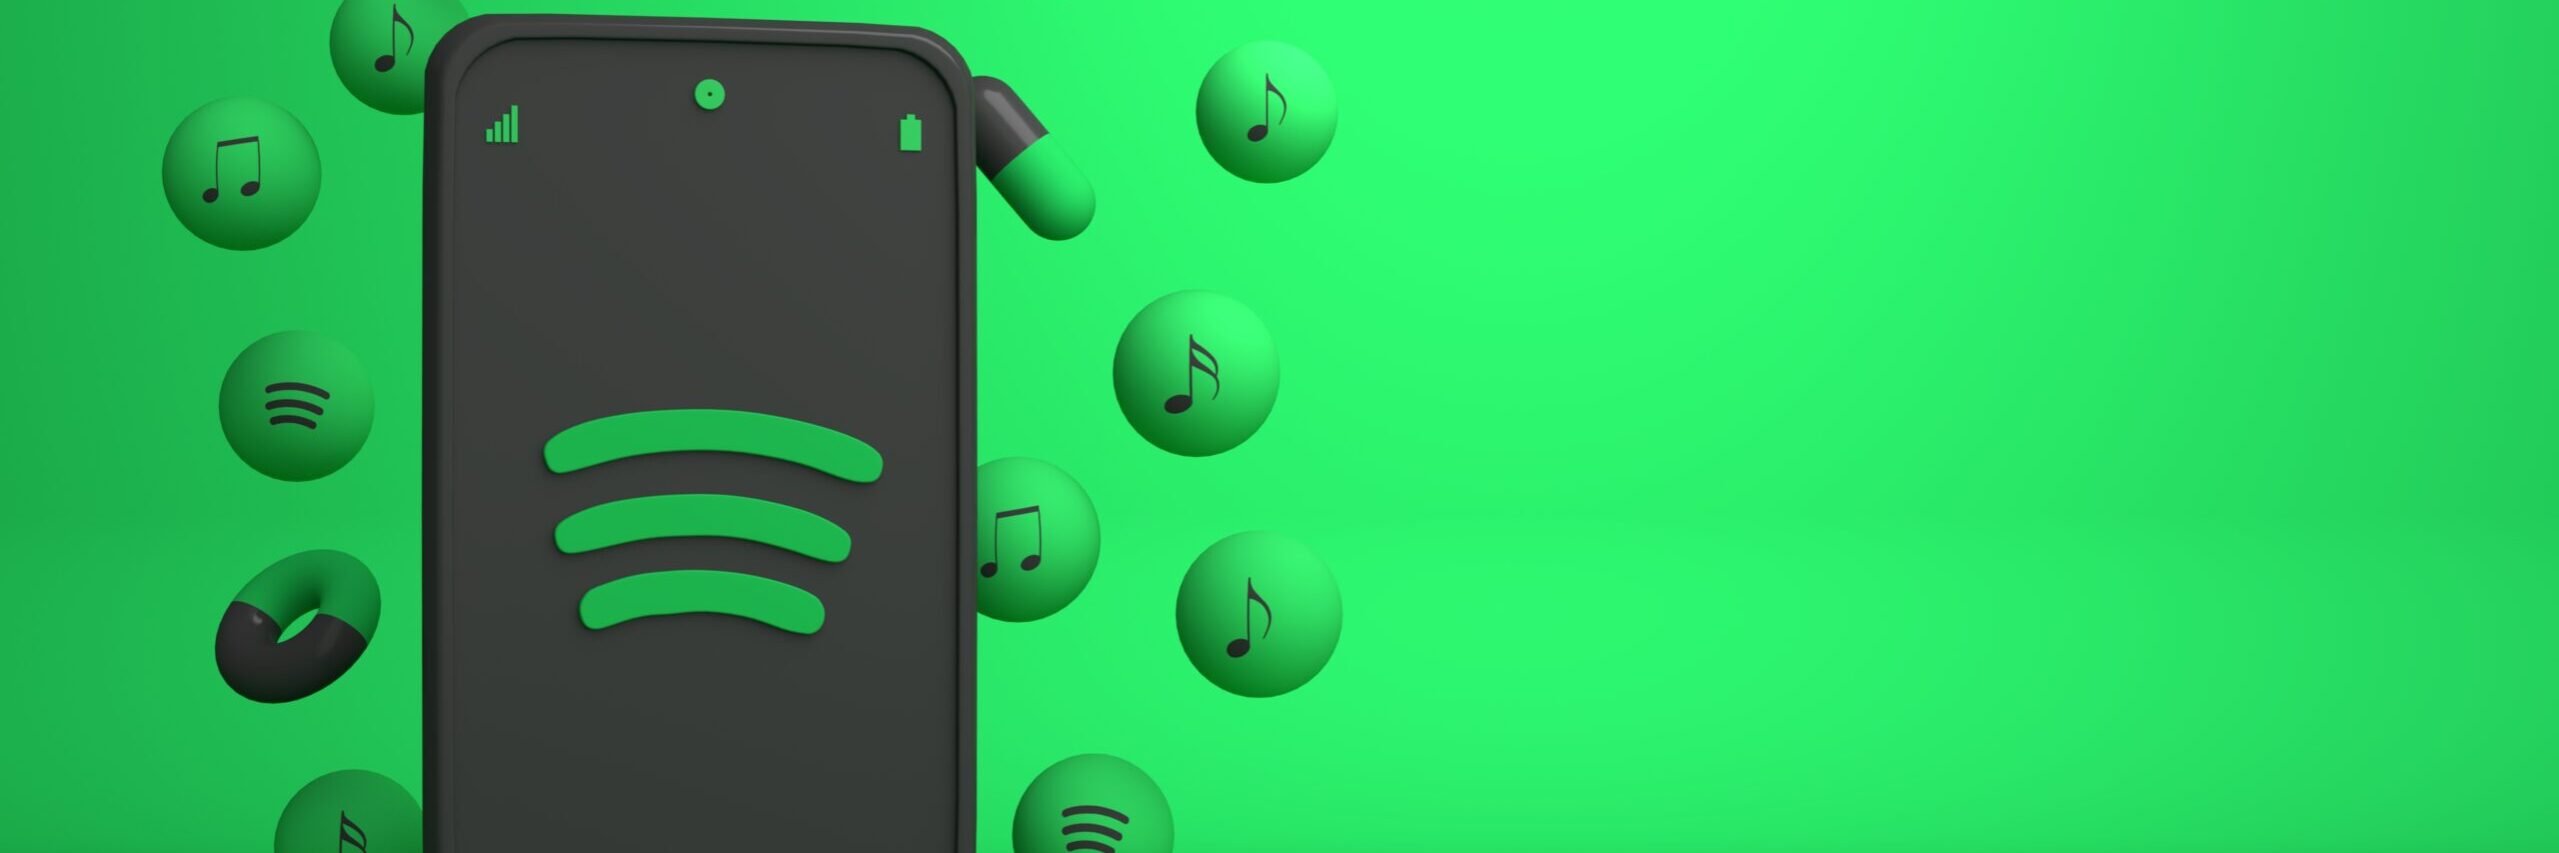 Spotify Hi-Fi – still not here